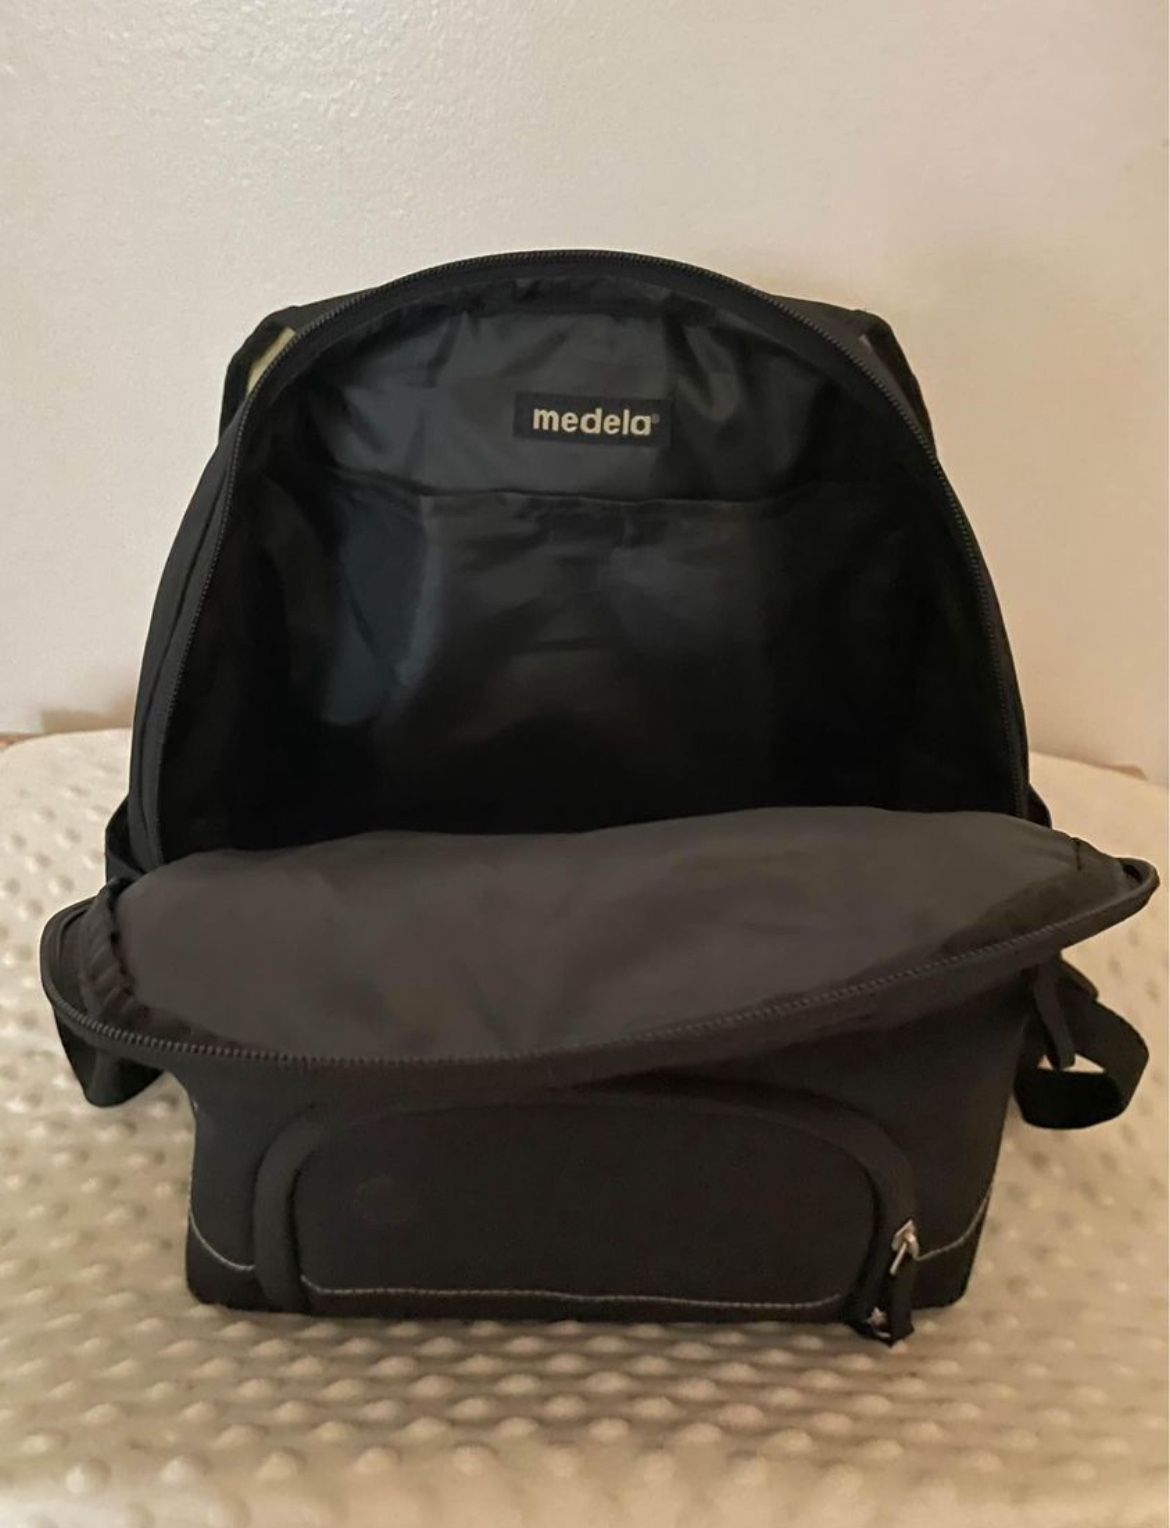 Medela Pumping / Diaper Bag 